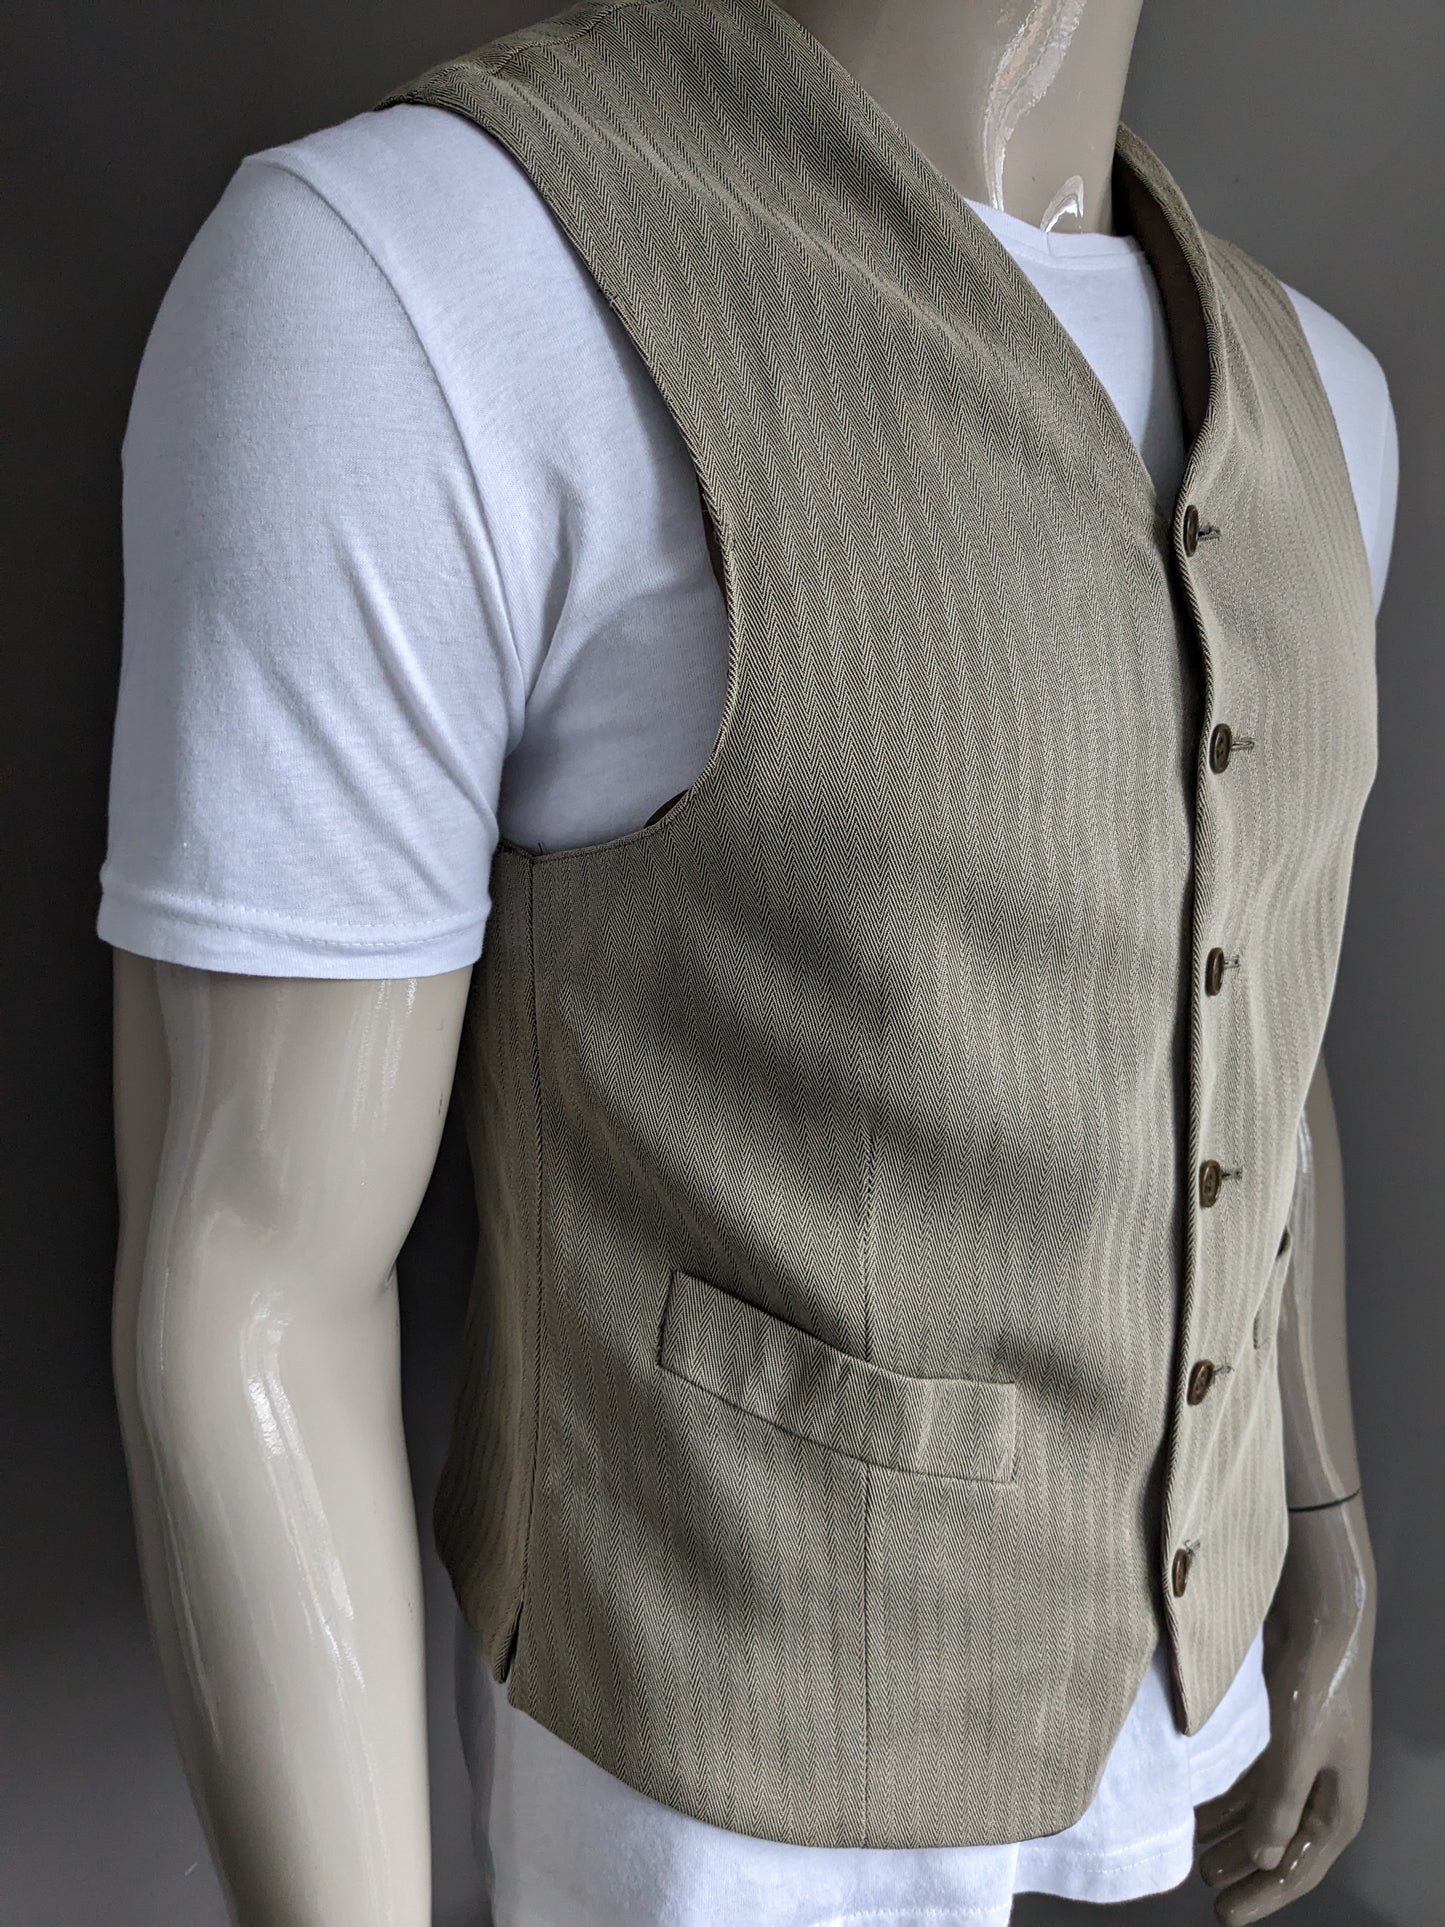 Vintage waistcoat. Light brown herringbone motif. Size 50 / M.